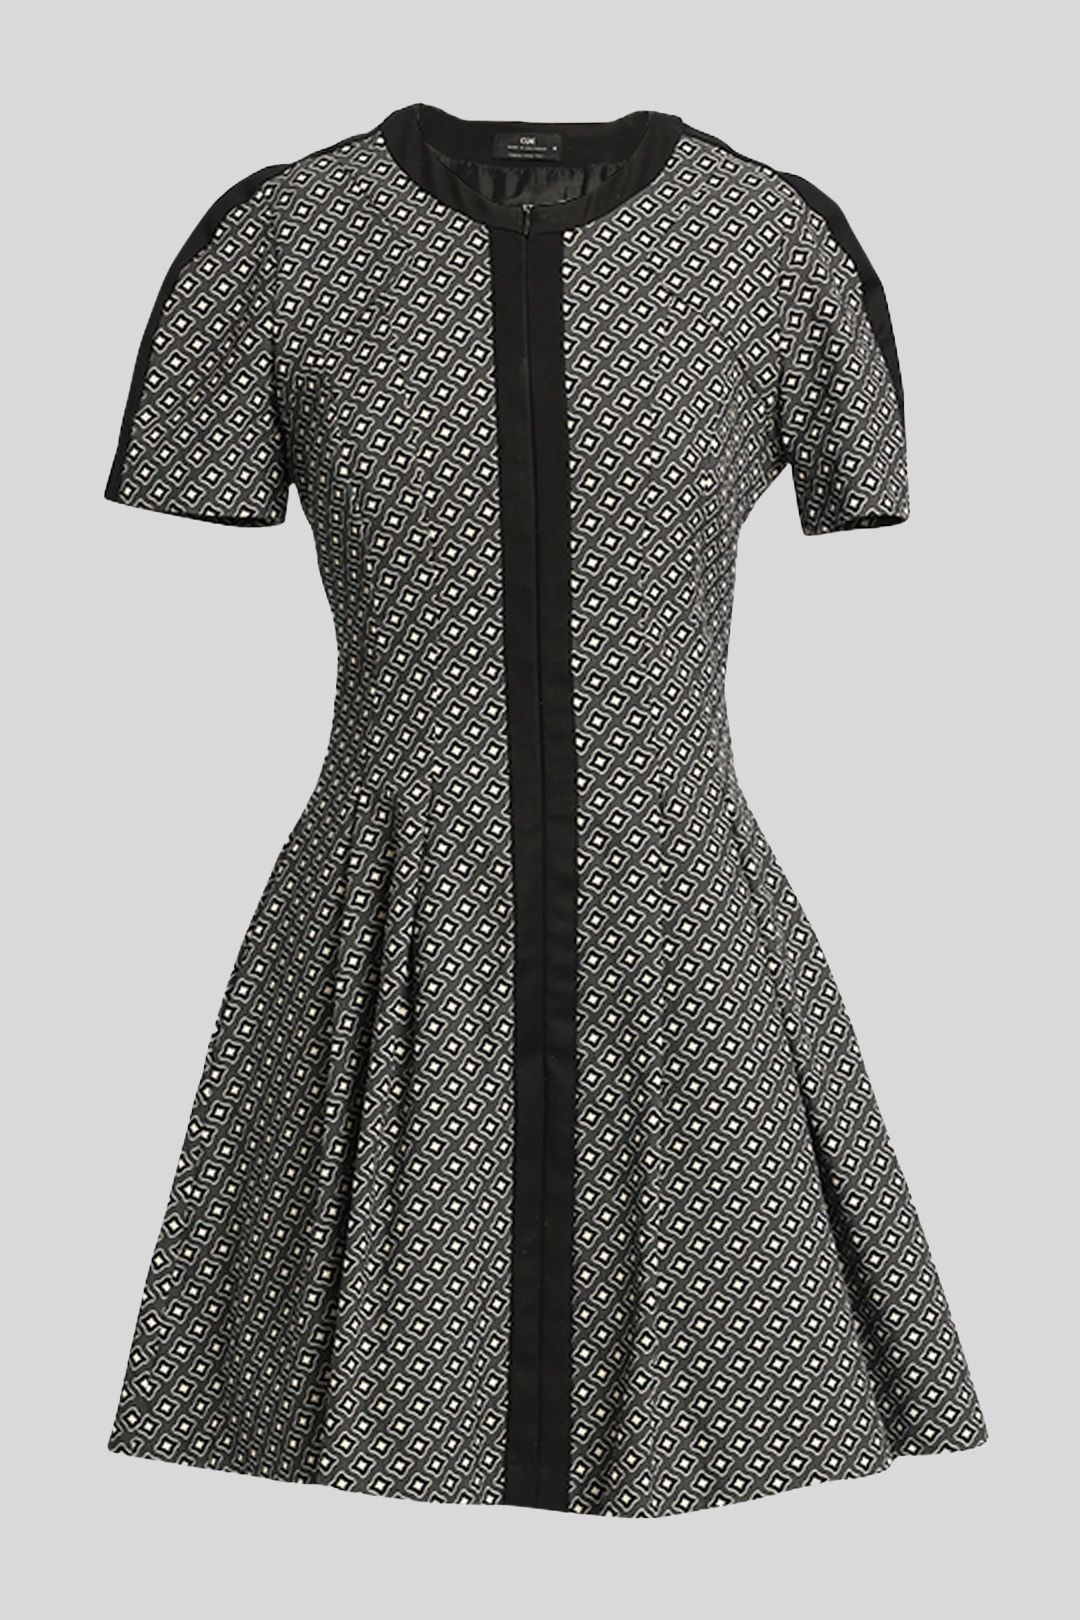 Cue - Geo Print Mini Dress